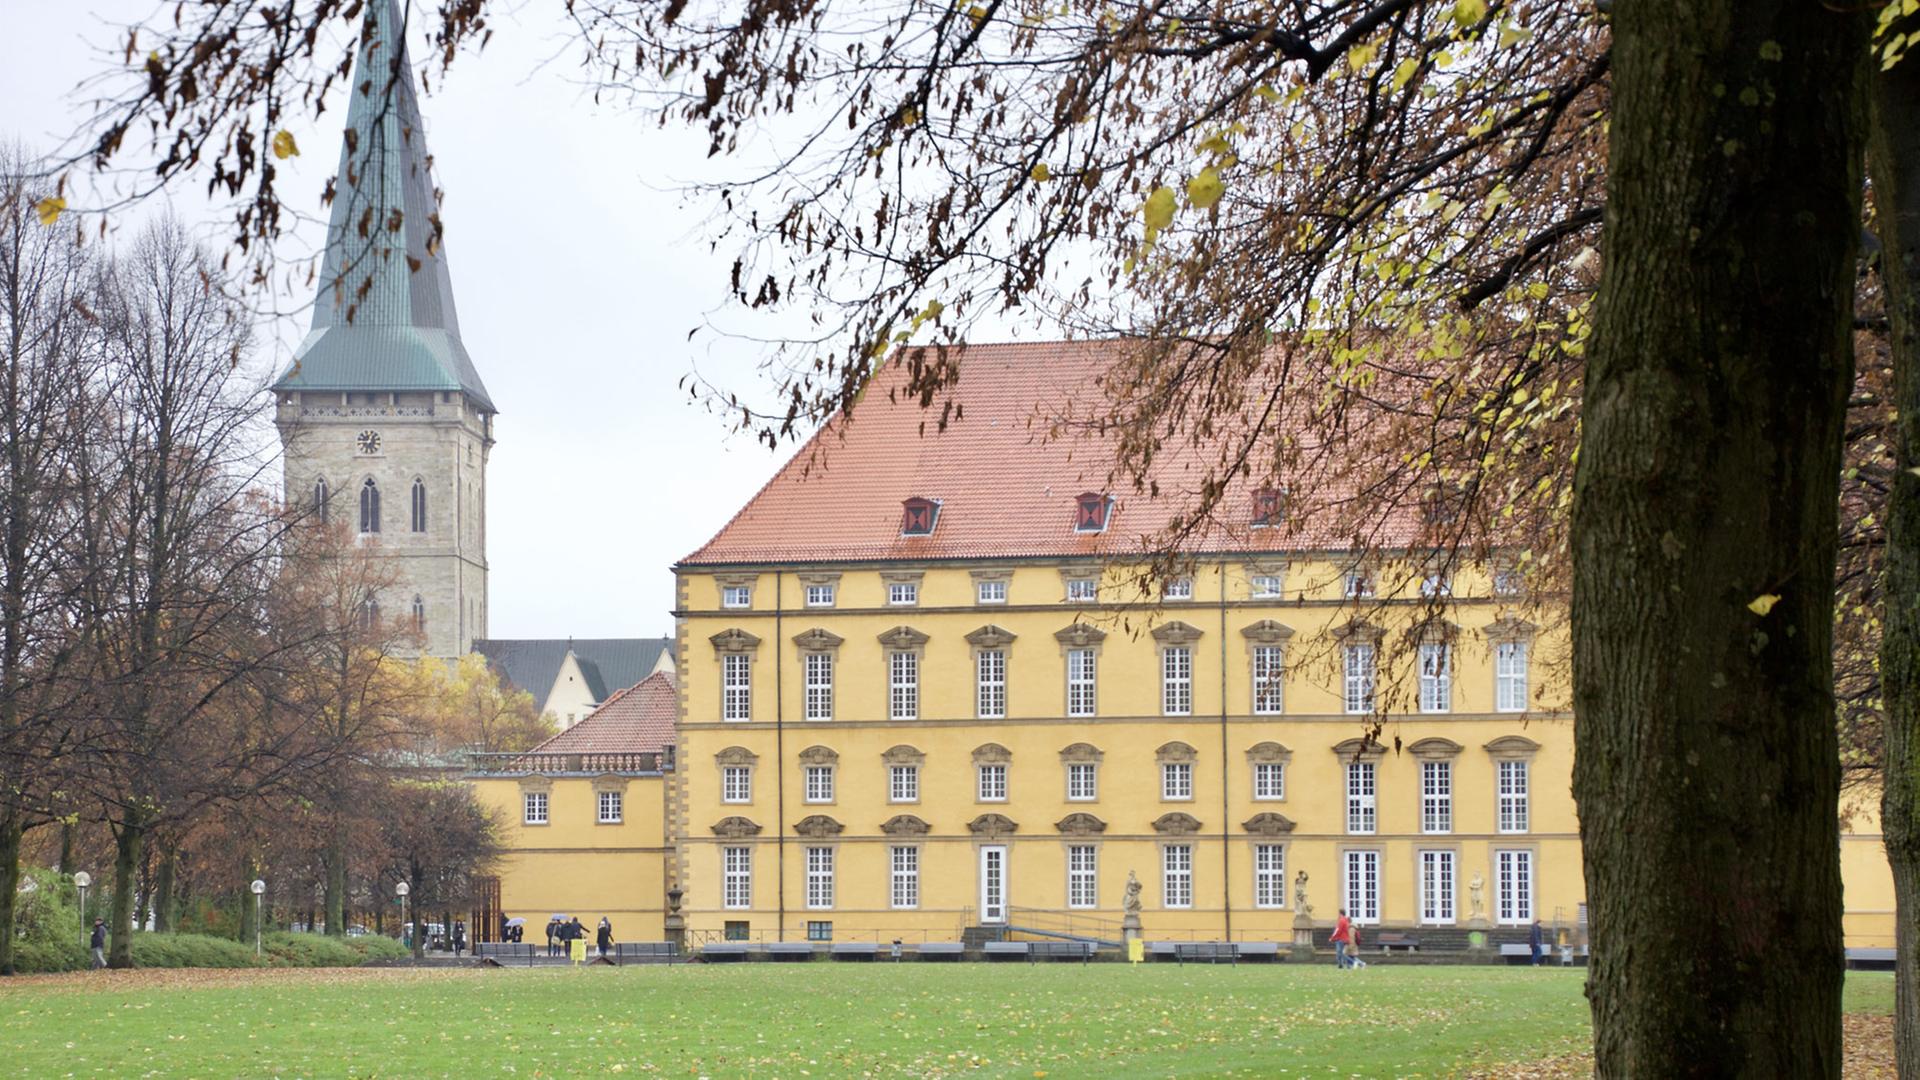 Das Osnabrücker Schloss war die Residenz Fürstbischofs Ernst August I. von Braunschweig-Lüneburg. Heute ist es der Sitz der Universität Osnabrück.